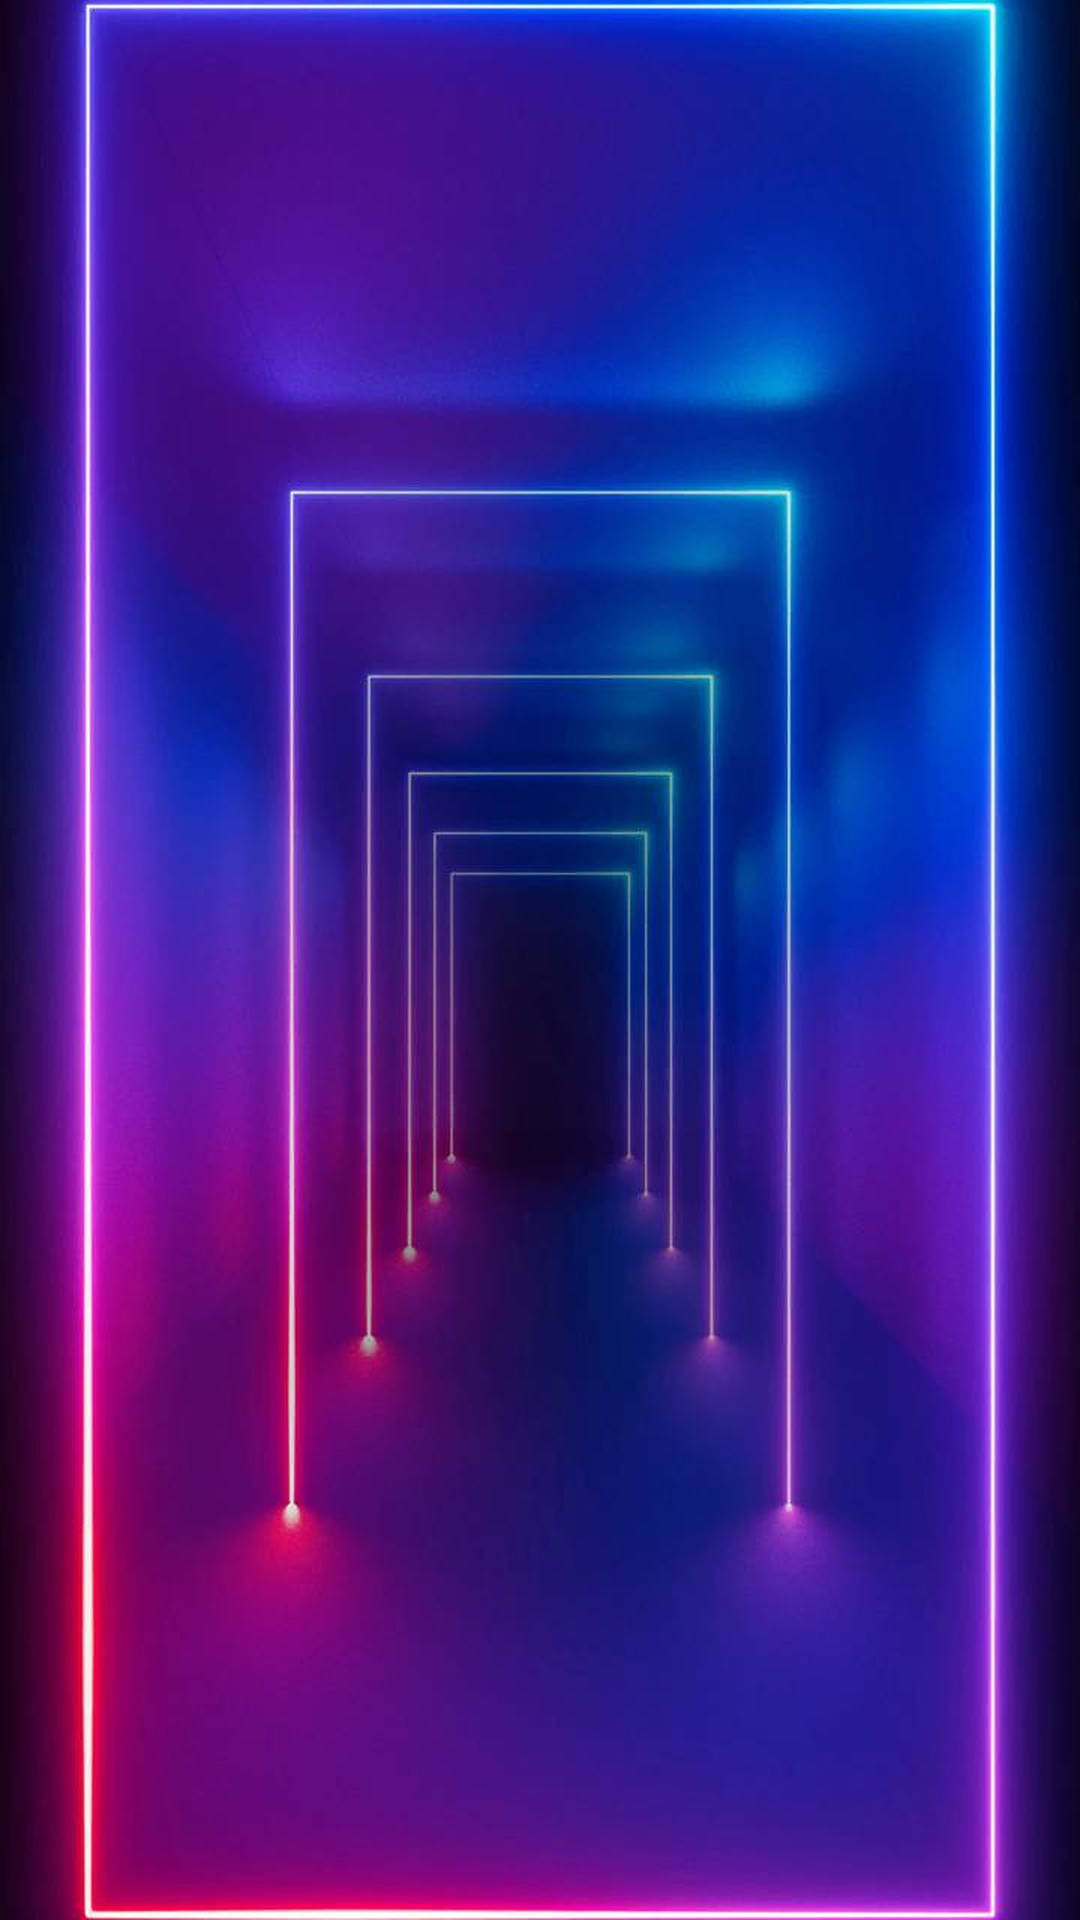 Led Light Hallway Background